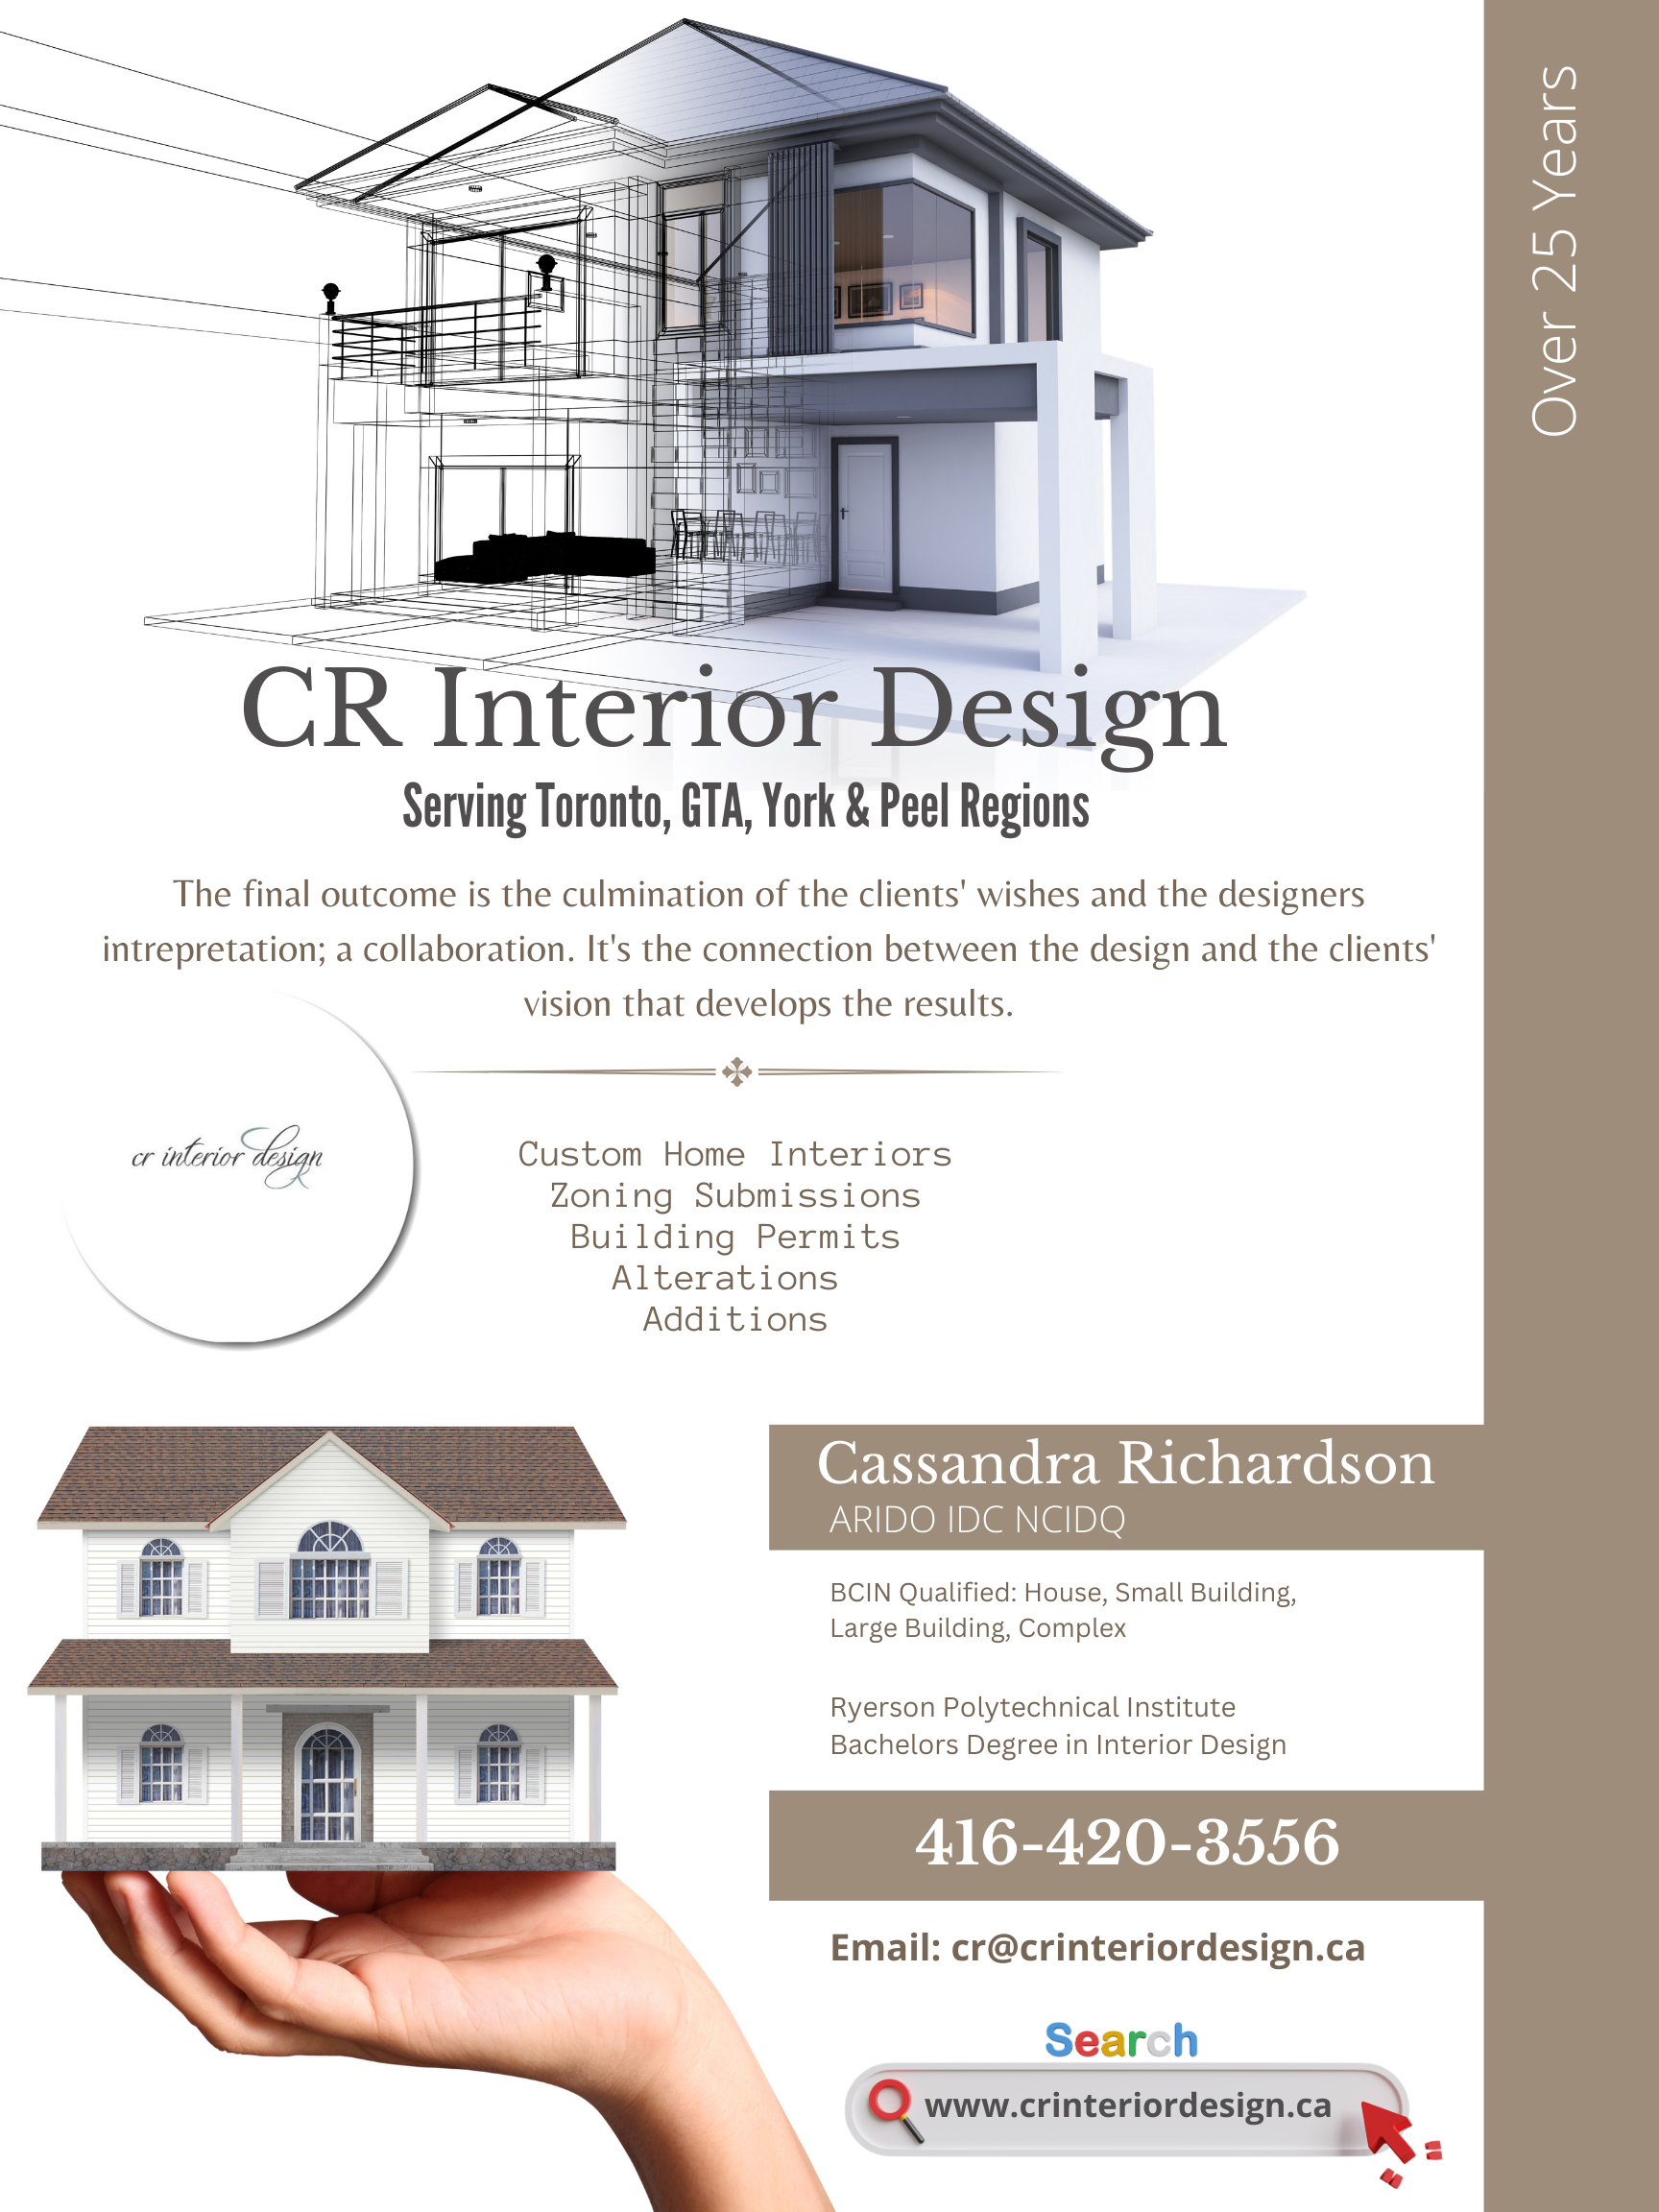 Visit CR Interior Design Inc